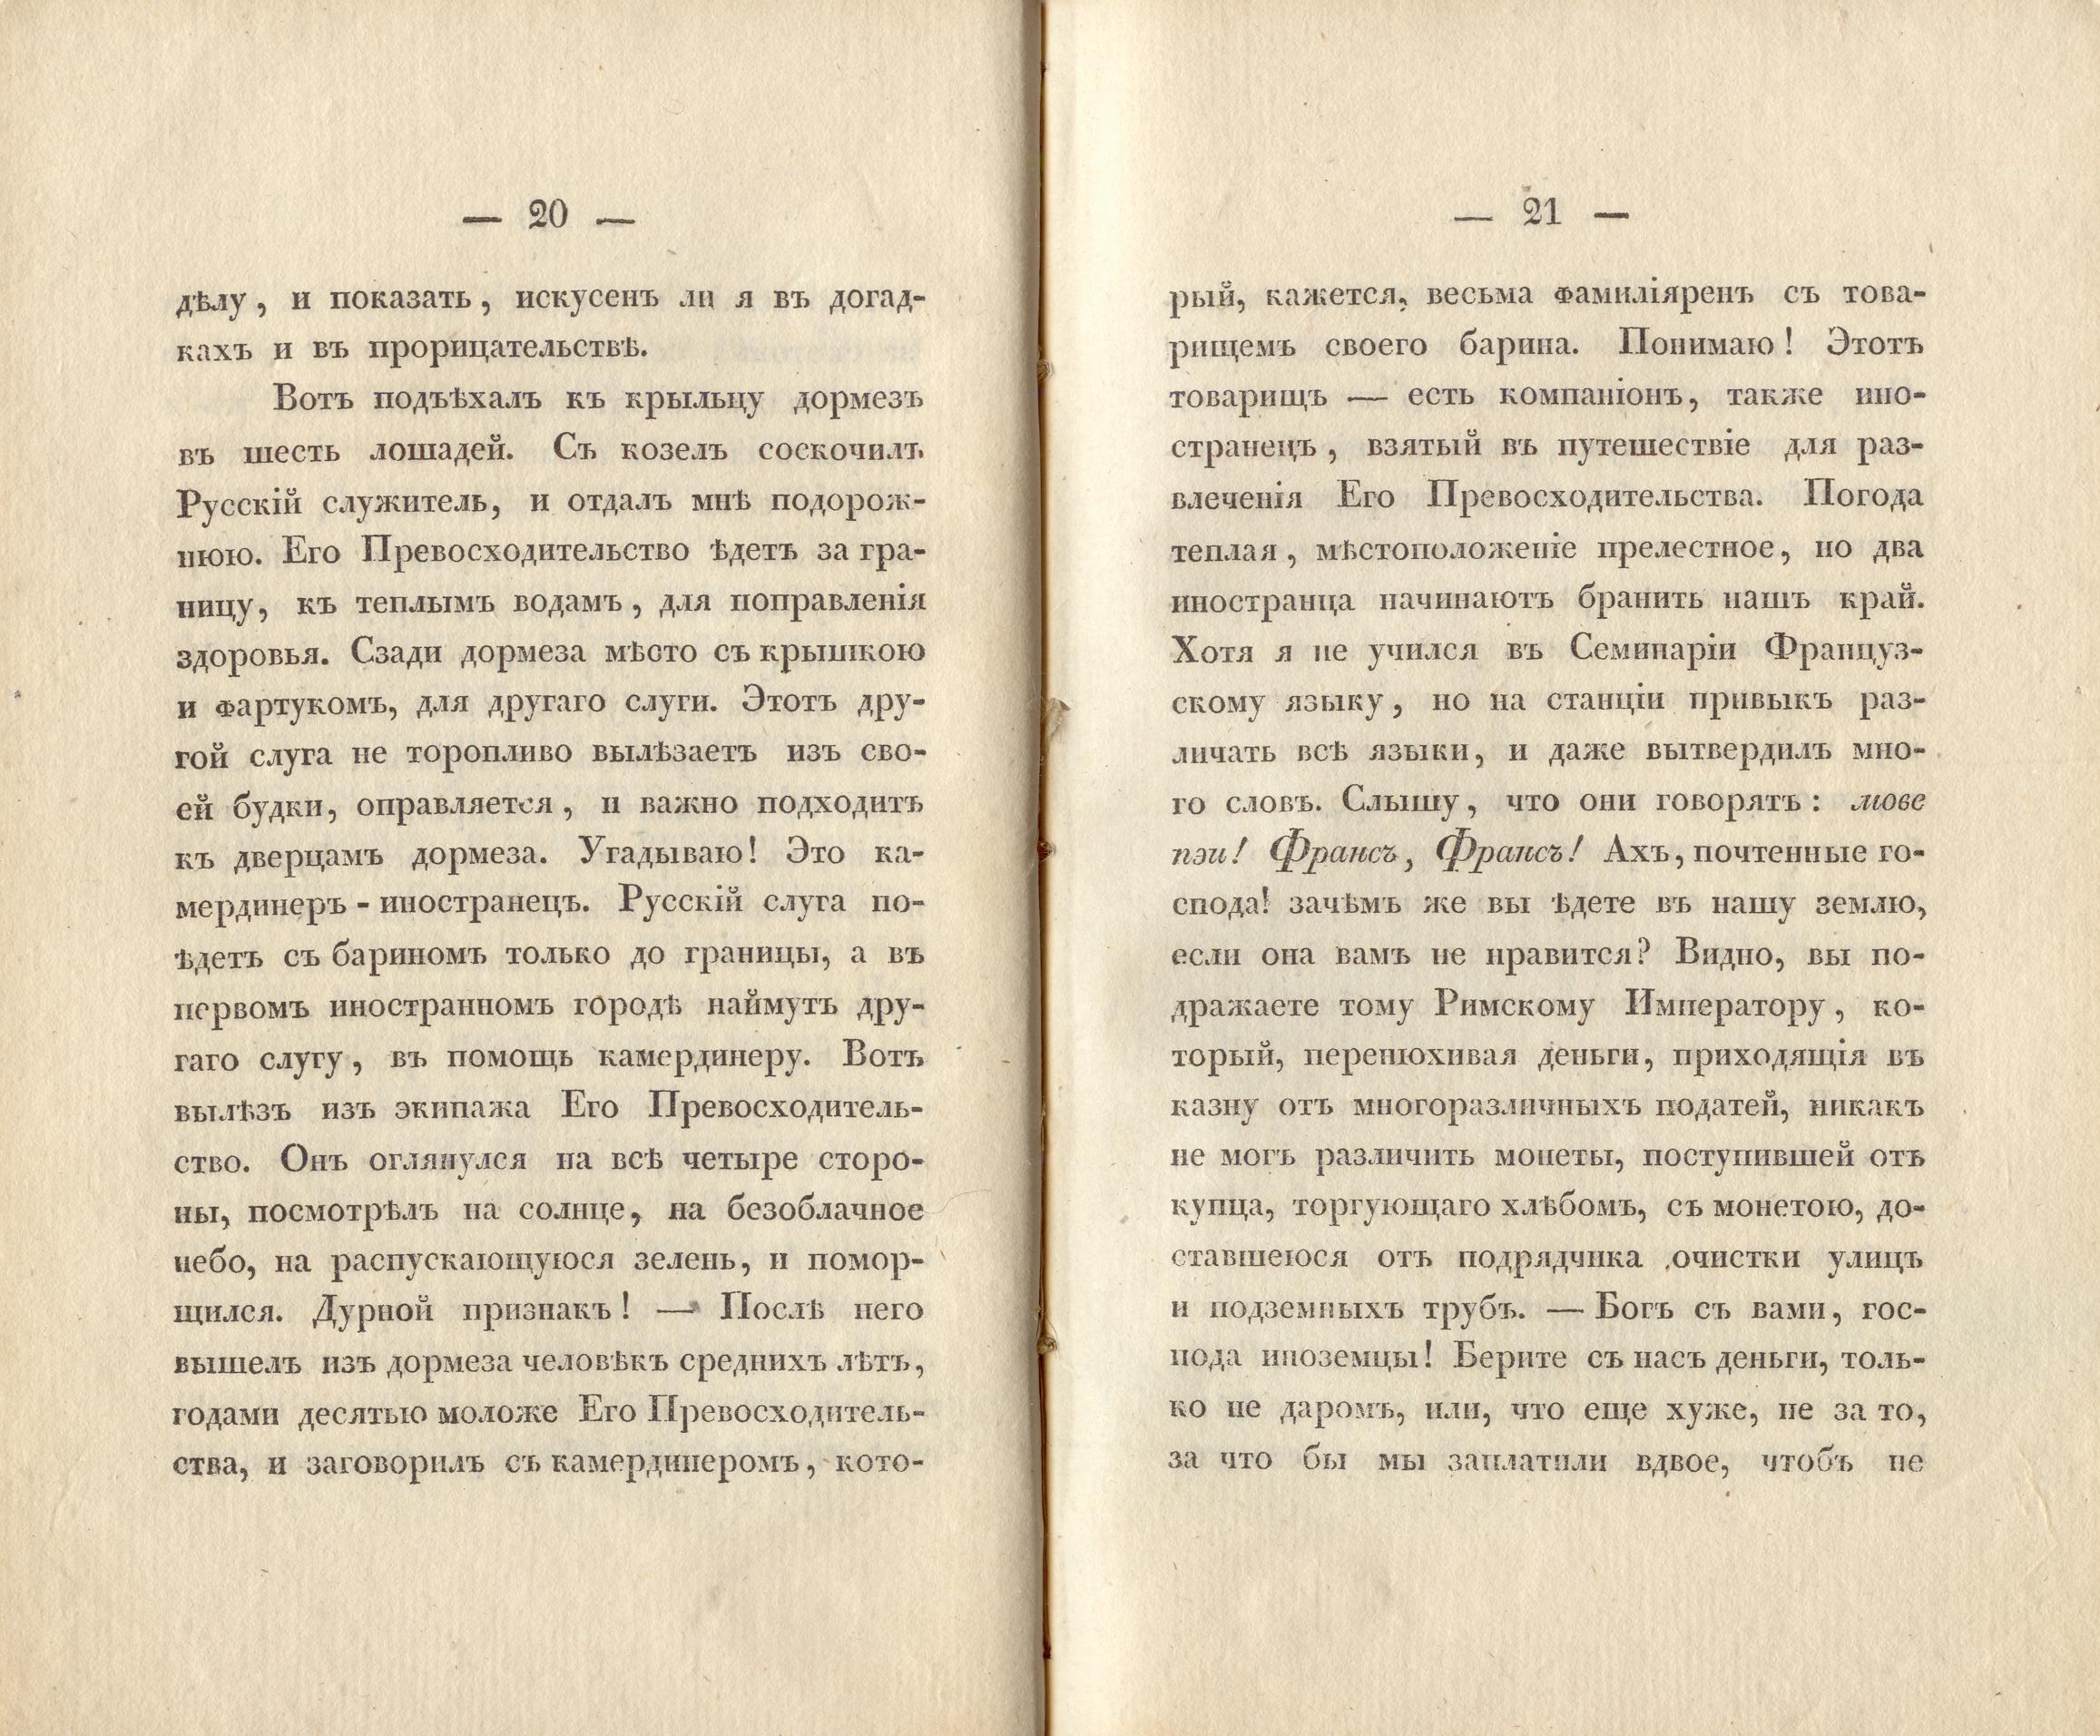 Сочиненія [2] (1836) | 13. (20-21) Main body of text